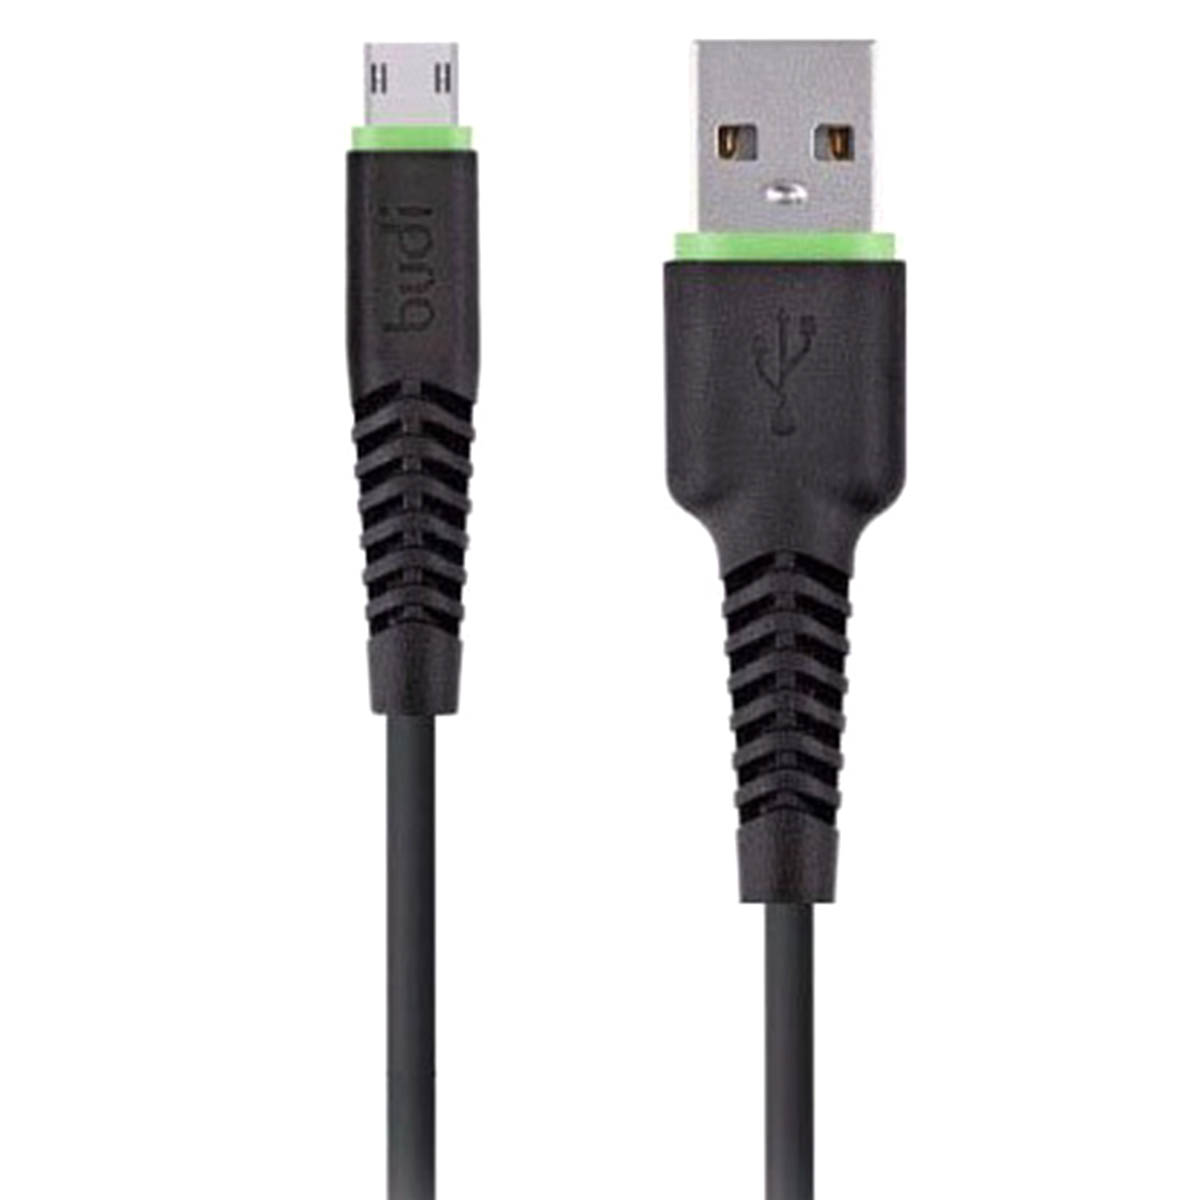 USB кабель BUDI для micro USB модель M8J150M20-BLK, быстрая зарядка, USB 2.0 длина 20 cм, цвет черный